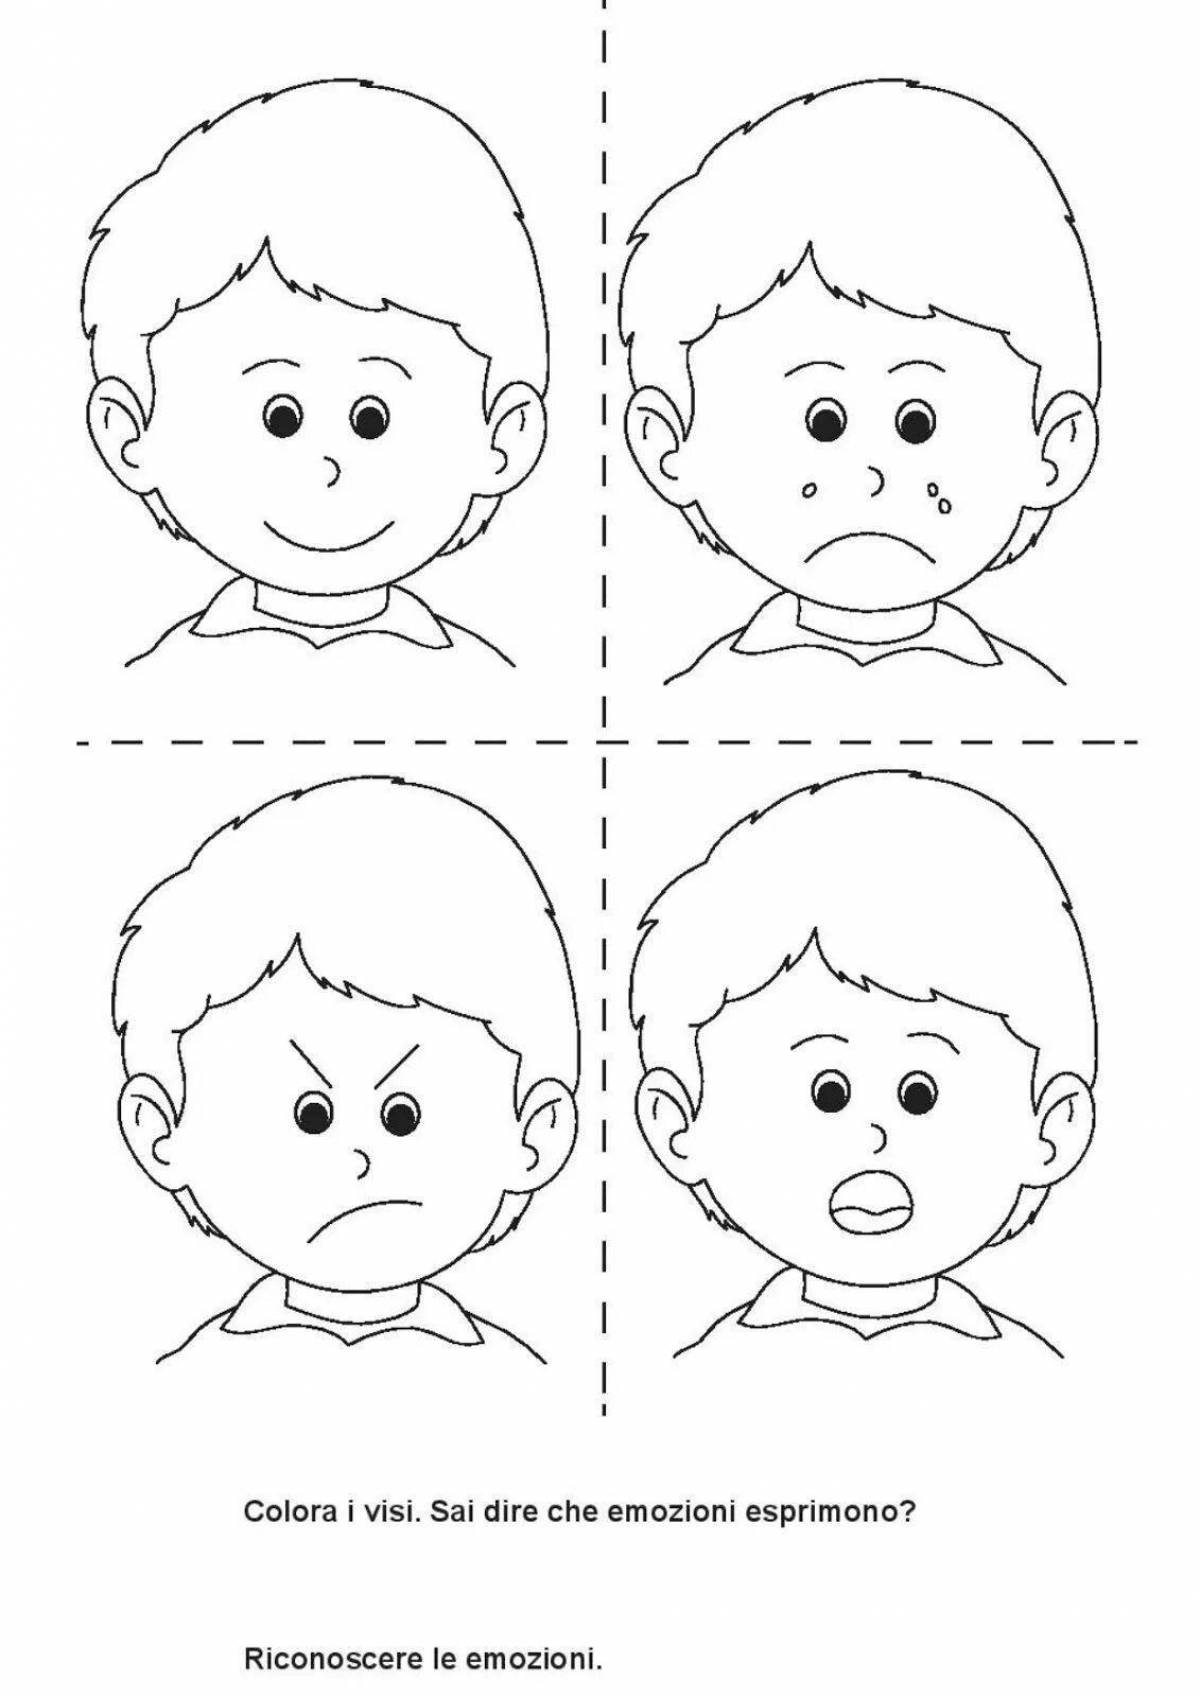 Изучаем эмоции в картинках для детей